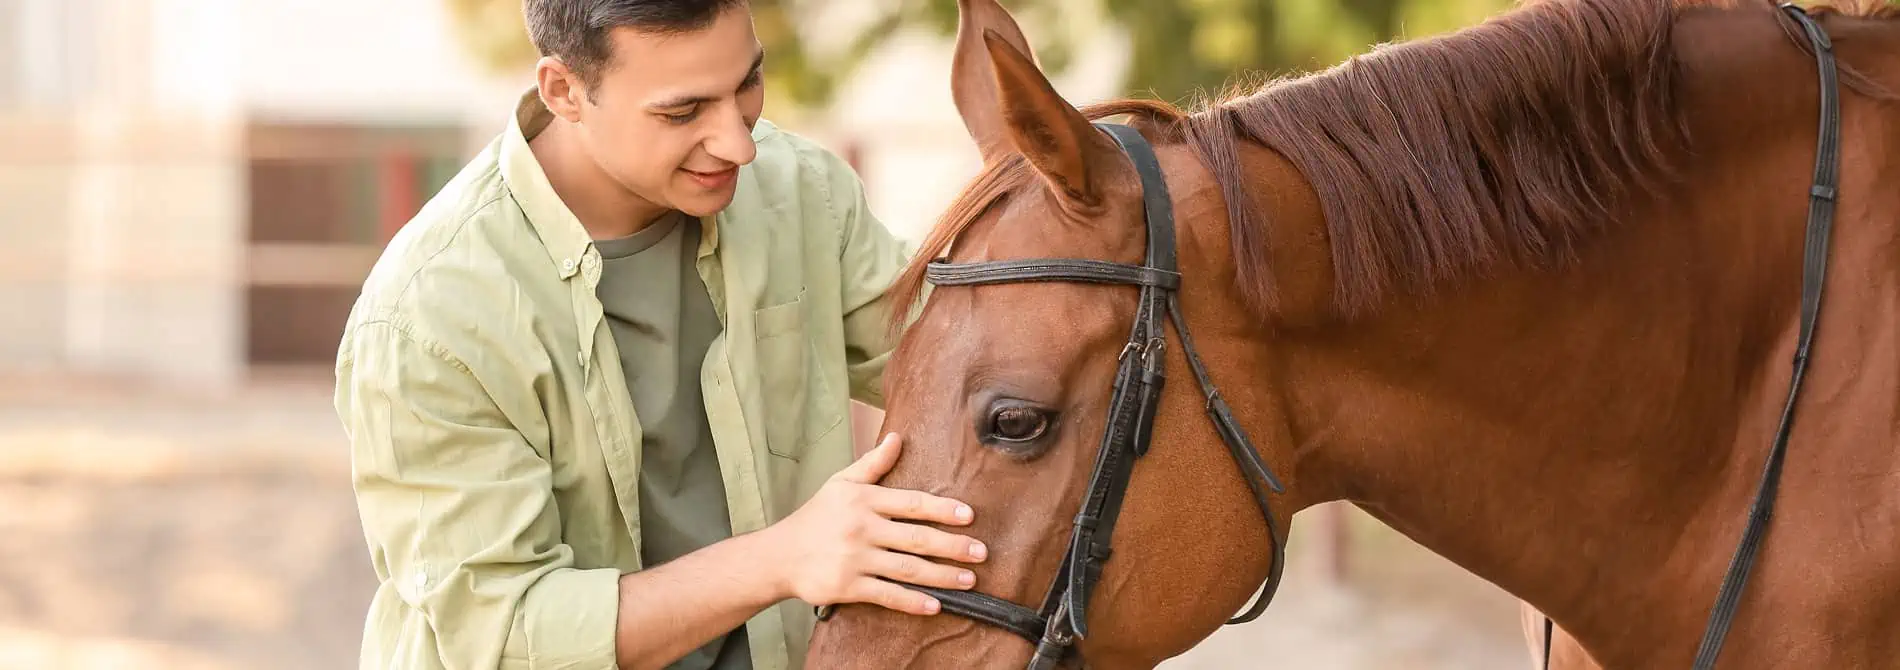 Man petting horse